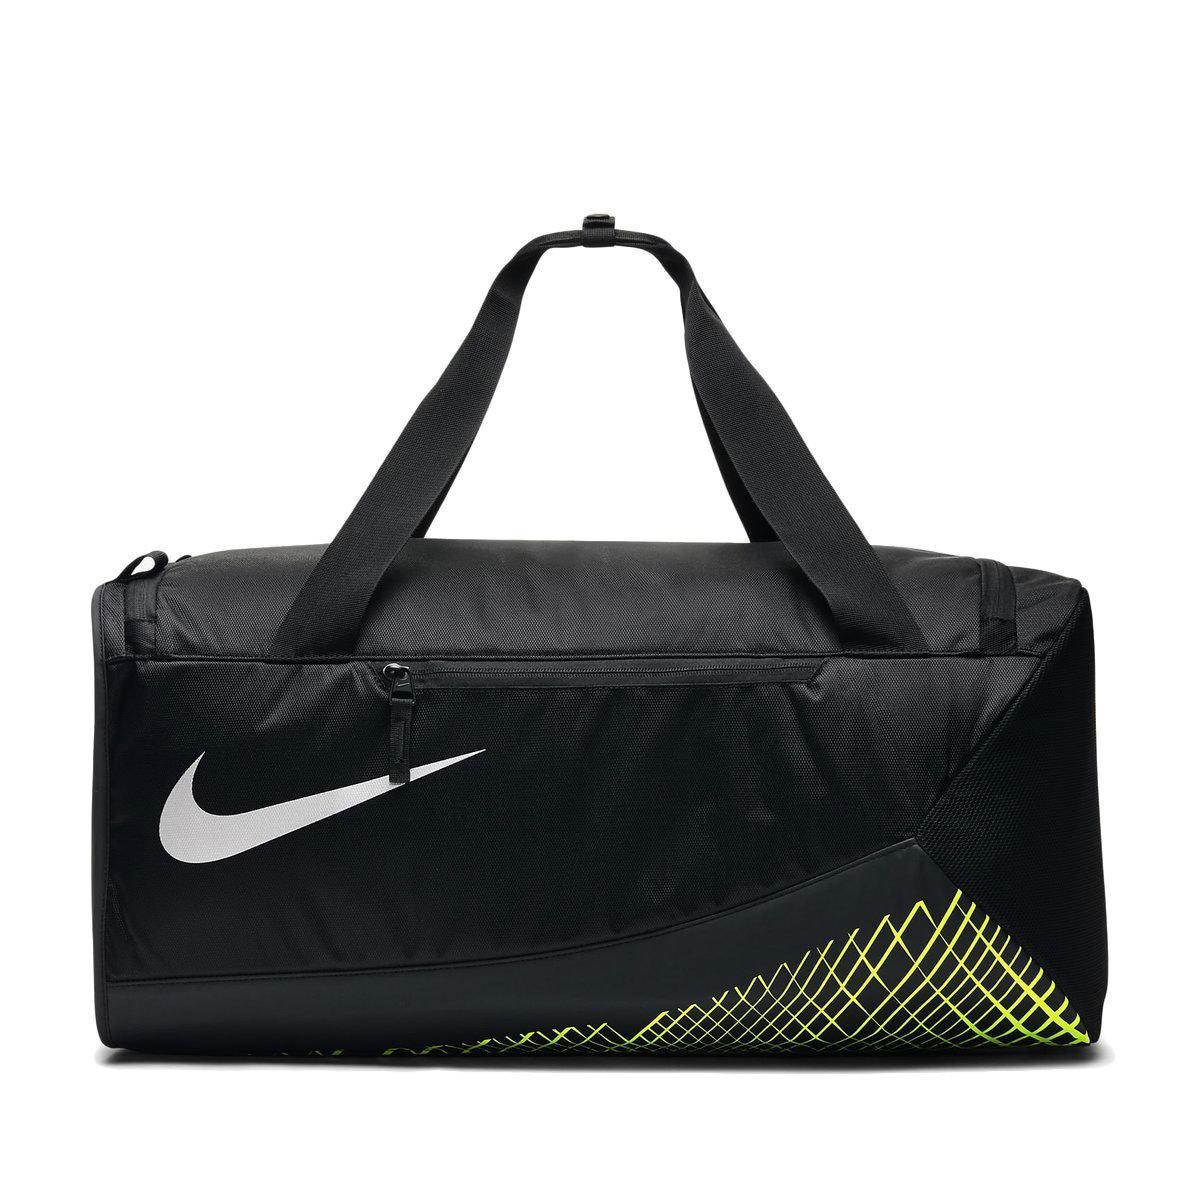 Nike Vapor Max Air Training Duffel Bag in Black for Men - Lyst